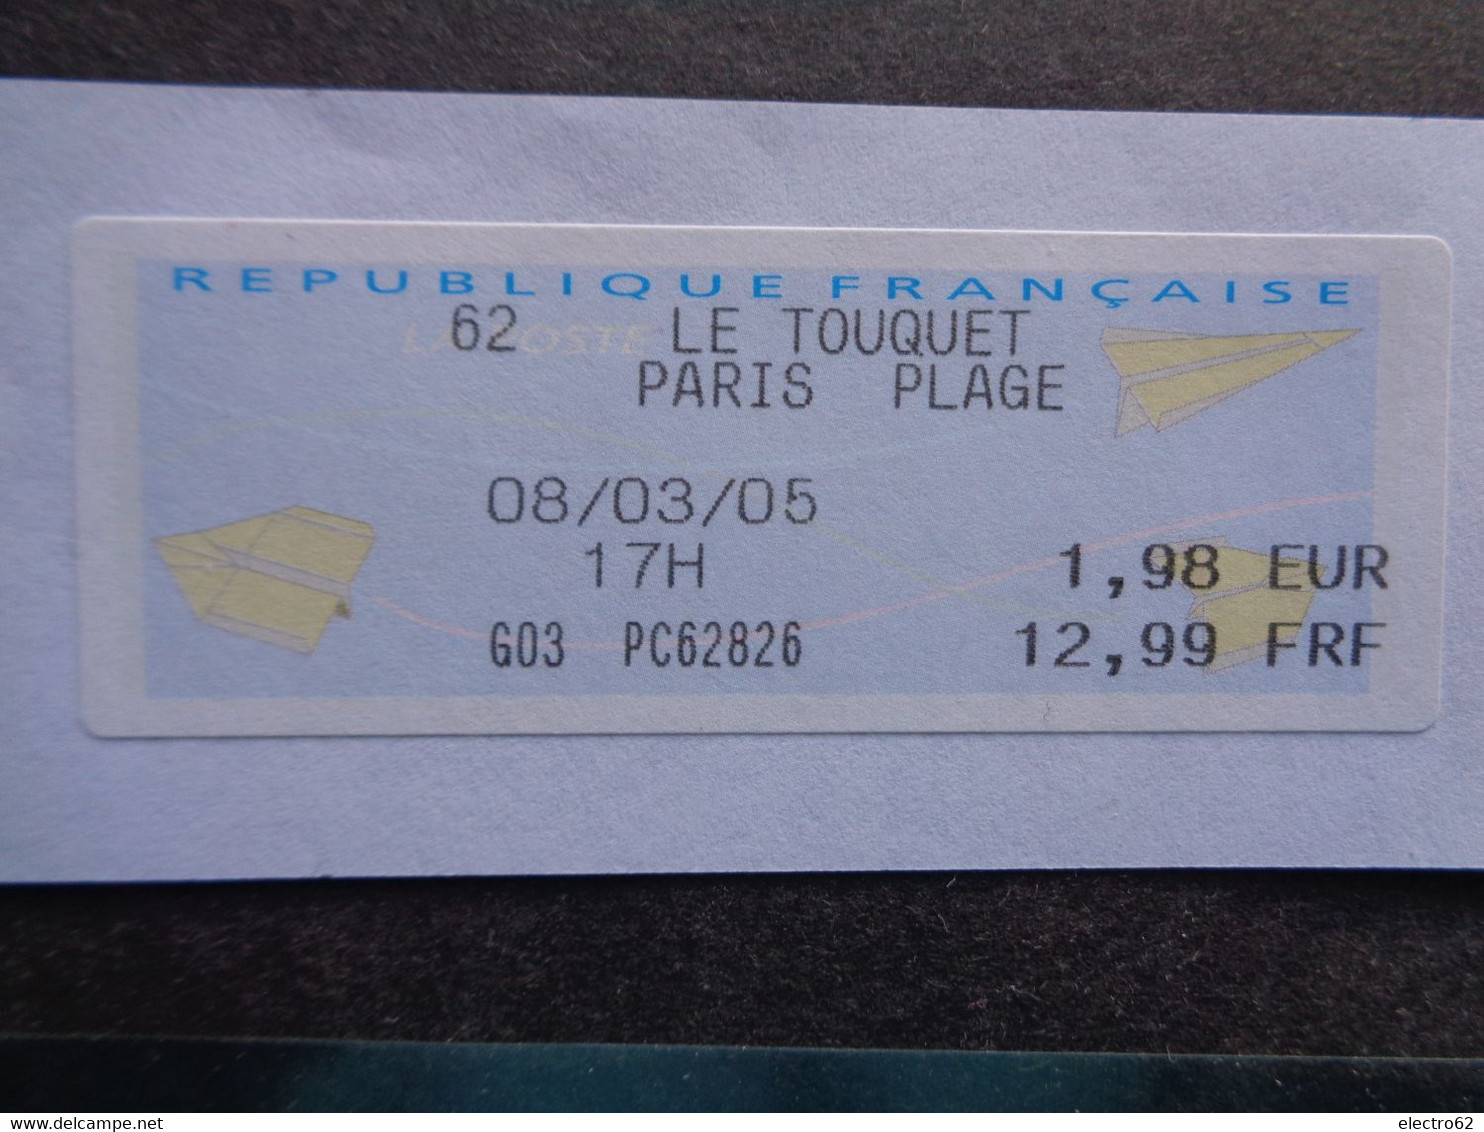 France Vignette Avion En Papier Touquet Paris Plage 08 / 03 / 2005 G03 PC 62826 Paper Plane 1,98€ 12,99 FRF - 2000 « Avions En Papier »